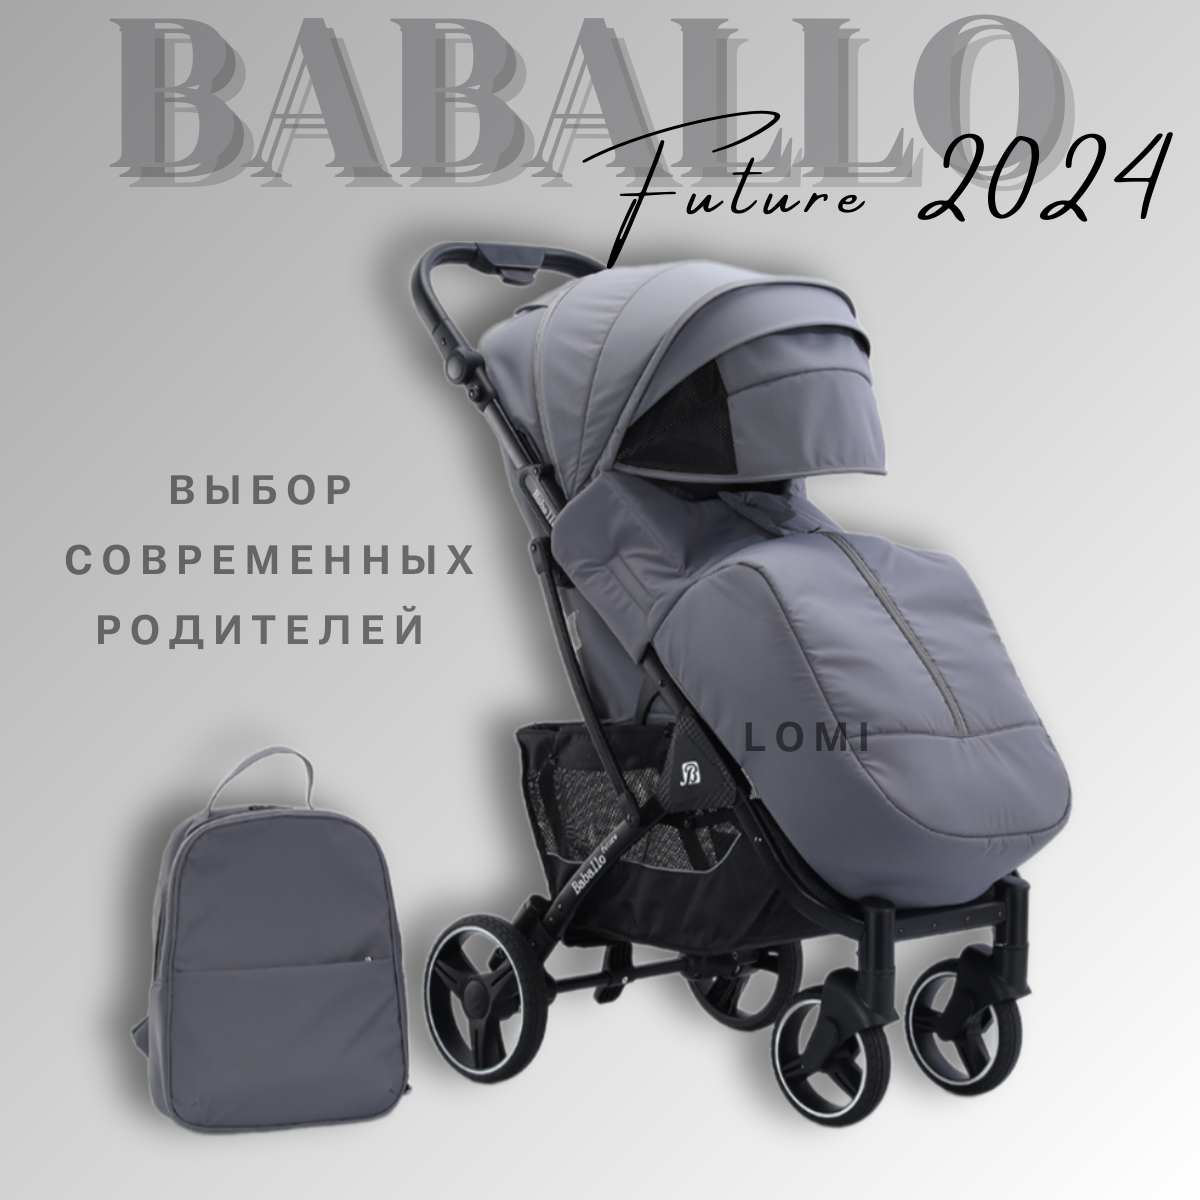 Детская прогулочная коляска Baballo future 2024, Бабало серый на черной раме, механическая спинка, сумка-рюкзак в комплекте